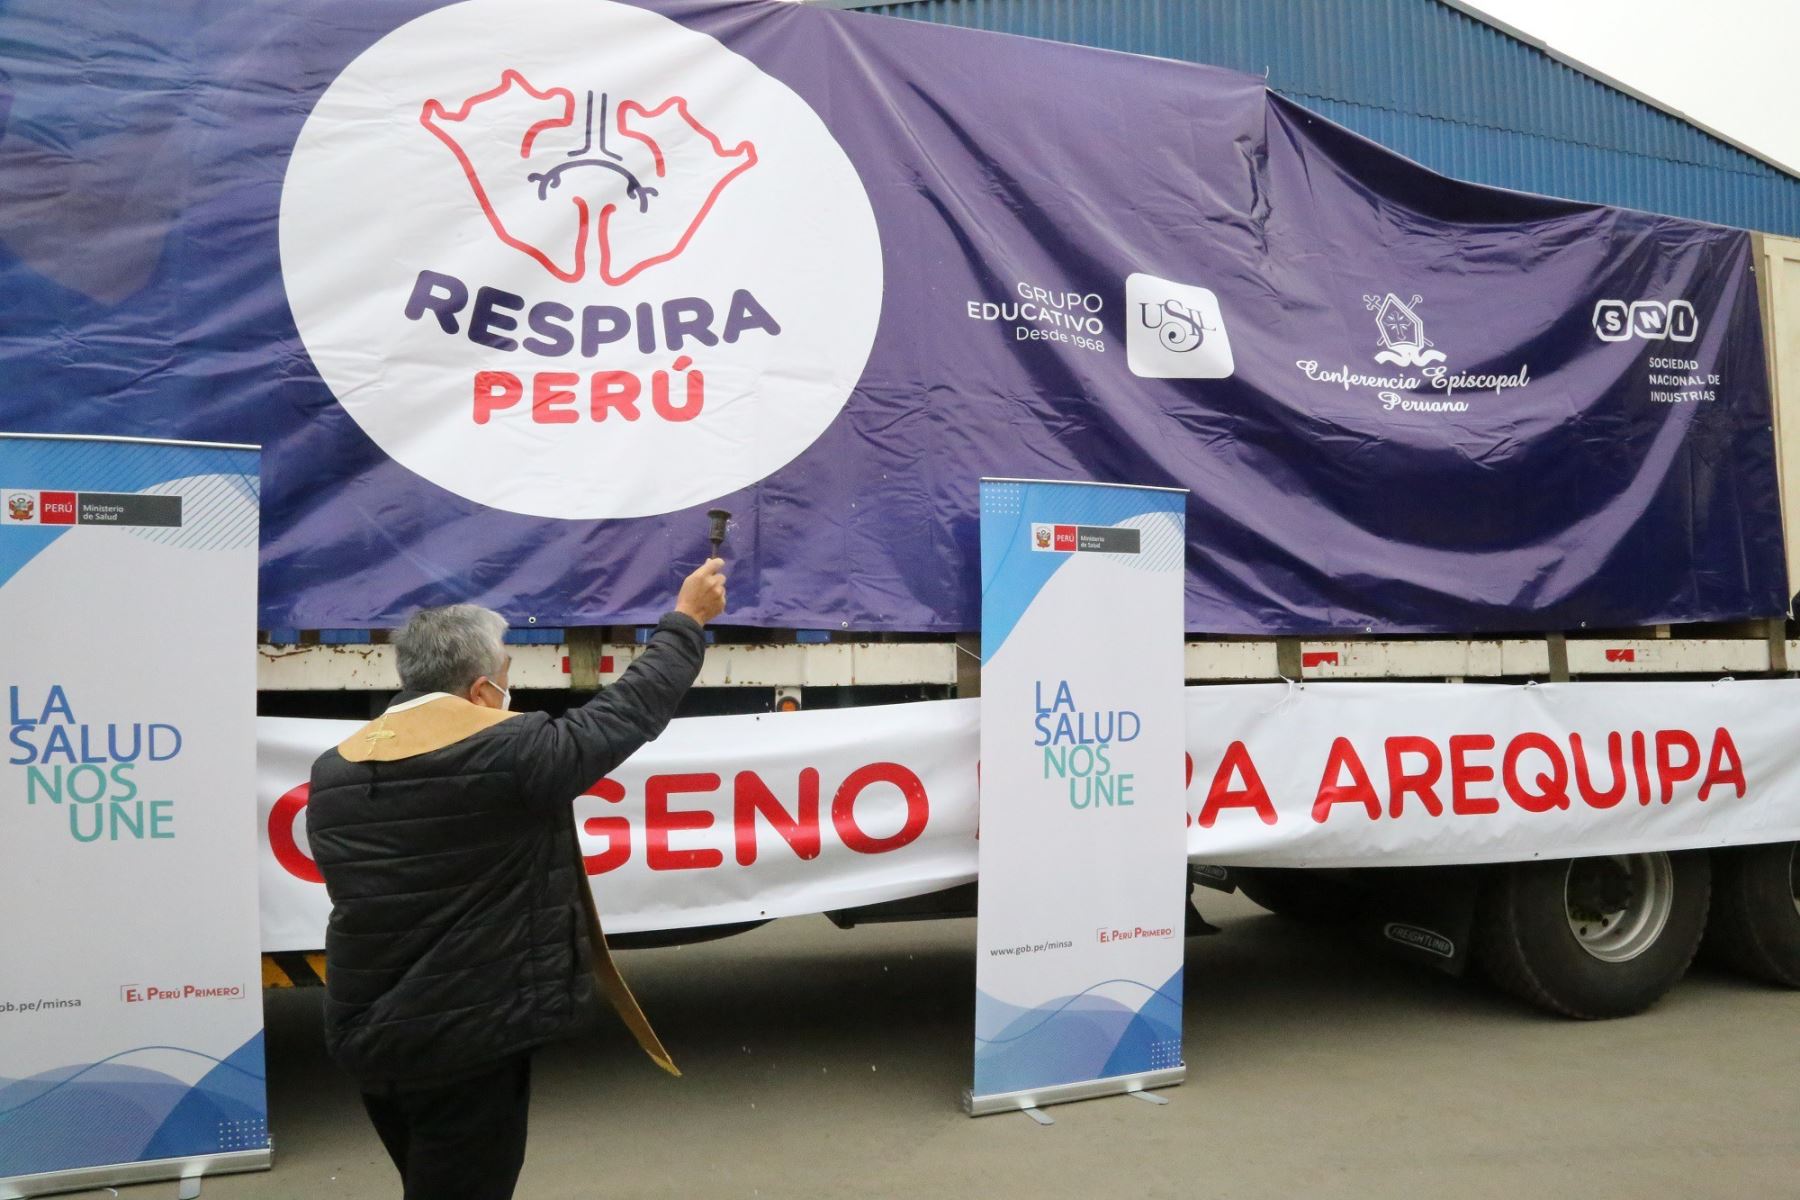 Esta mañana partió con rumbo a Arequipa la planta de oxígeno adquirida por Respira Perú que producirá 60 metros cúbicos de oxígeno medicinal que servirá para atender a pacientes covid-19 de esa región. ANDINA/Difusión